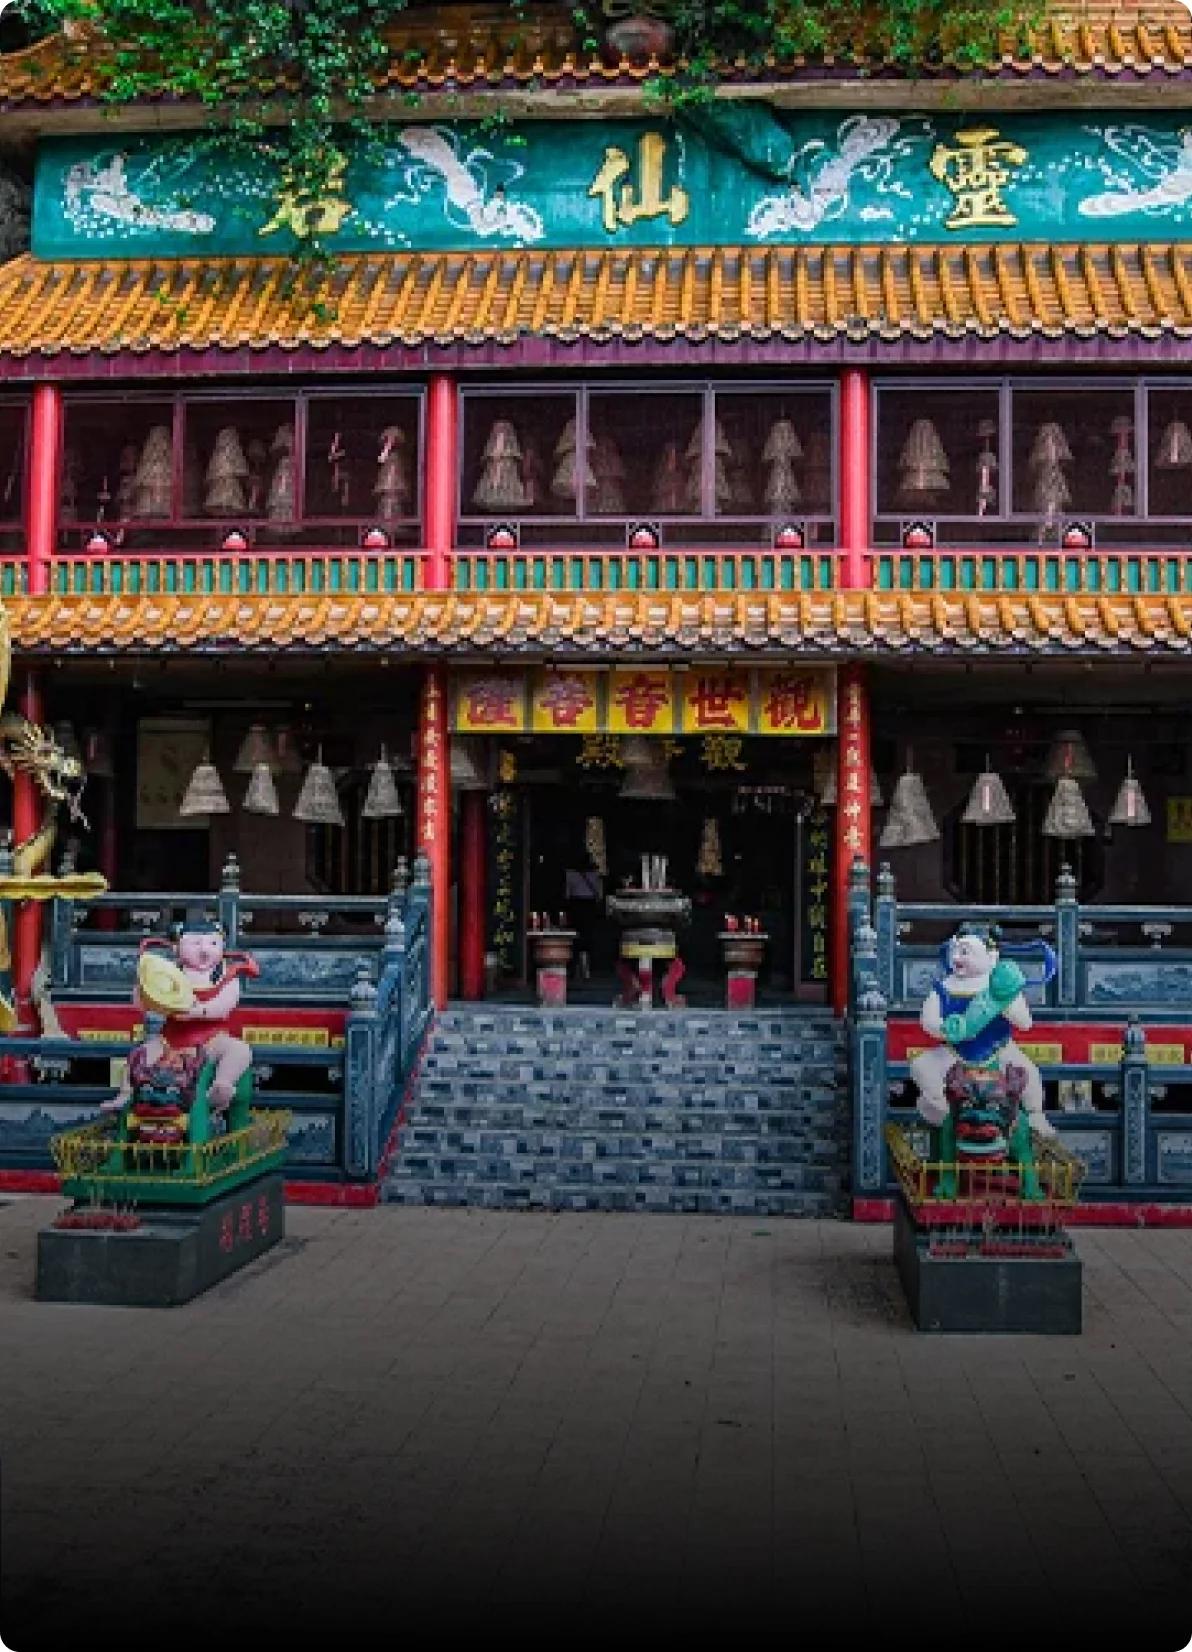 Ling Sen Tong Temple